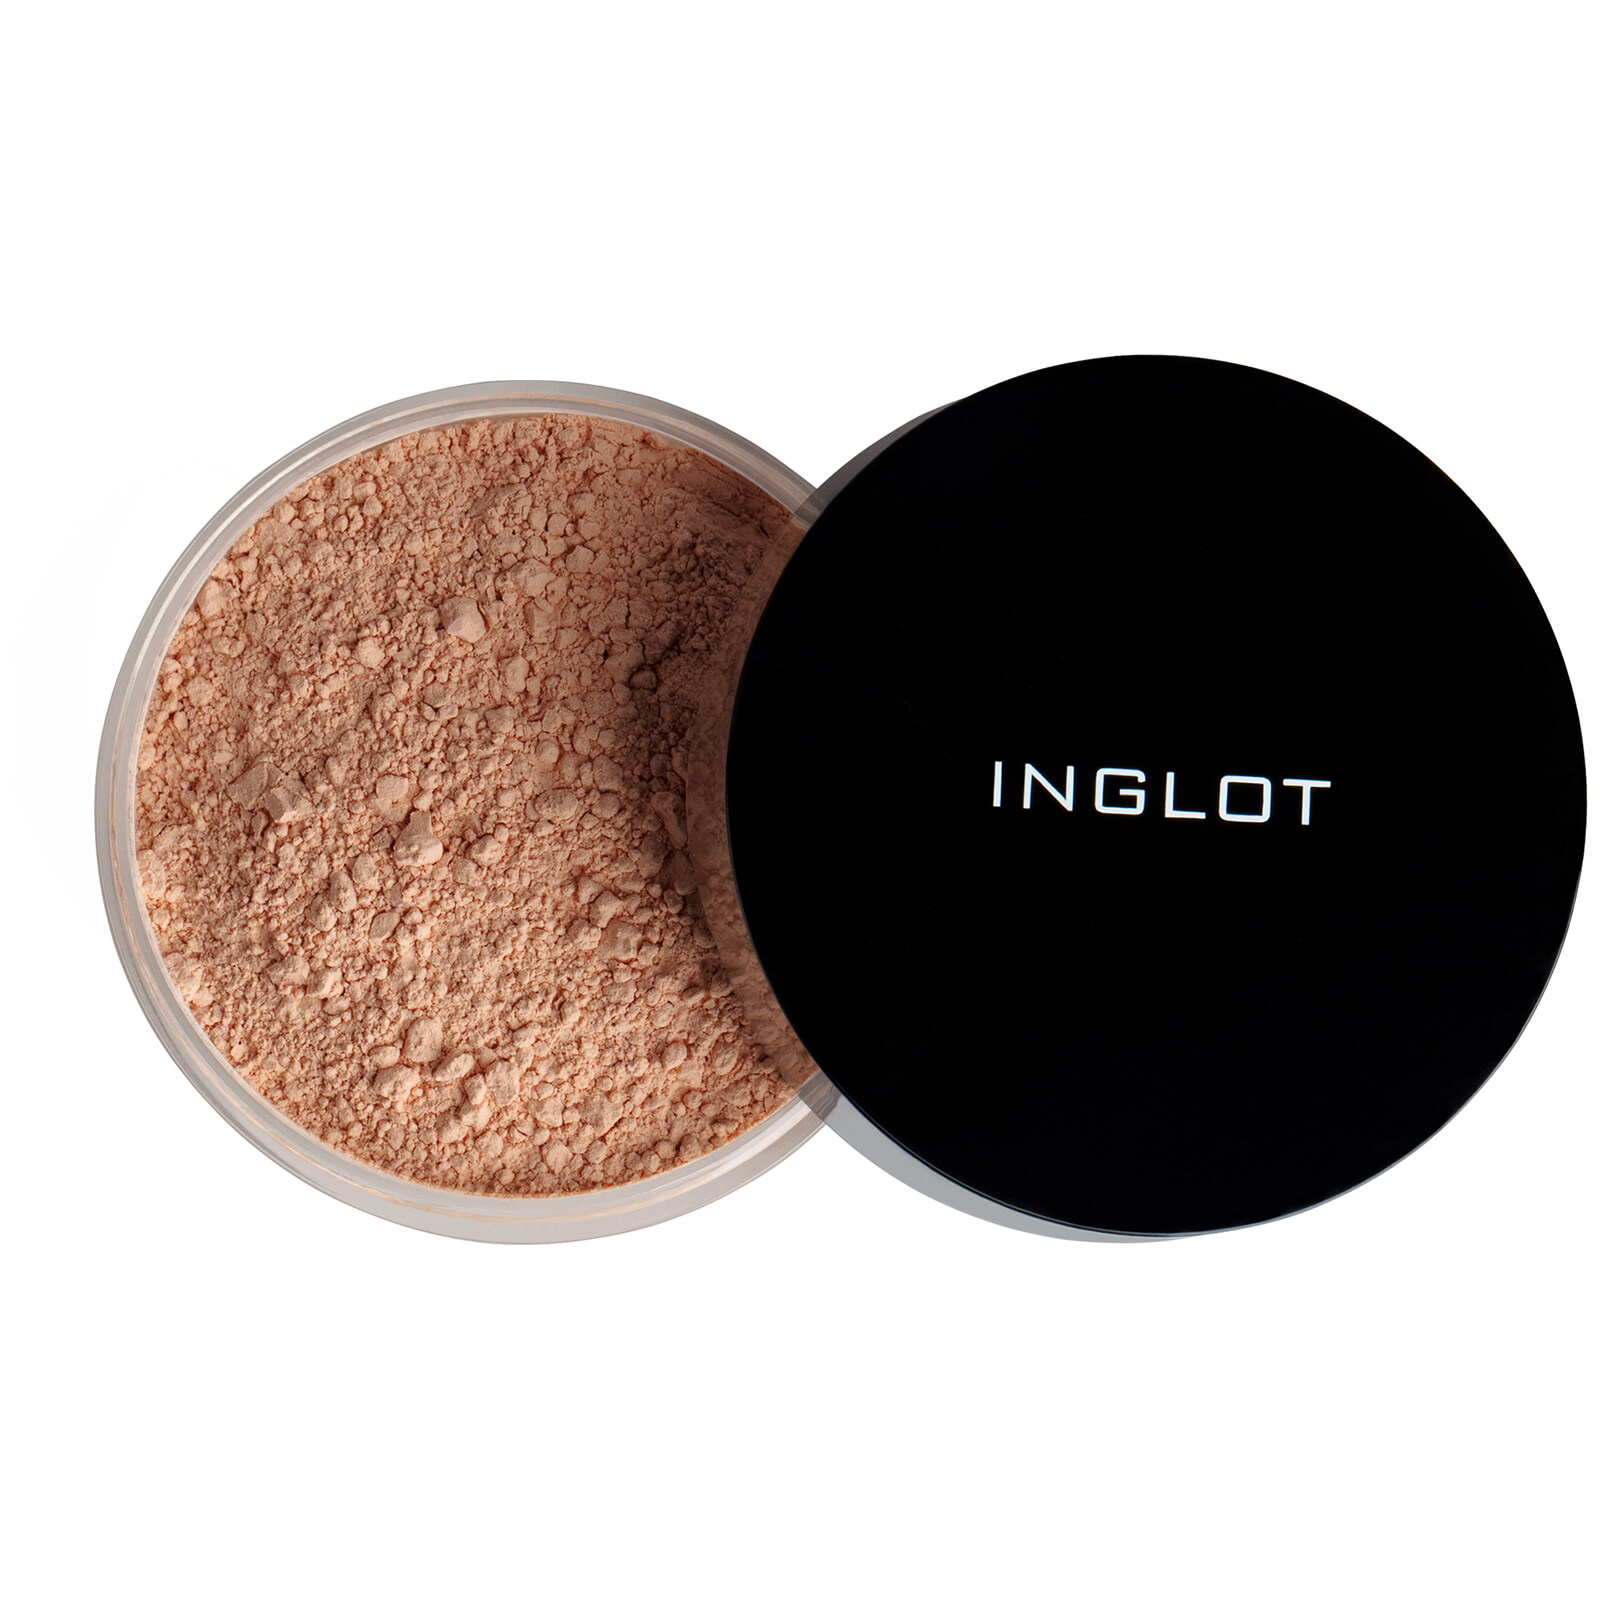 Image of Inglot Mattifying Loose Powder 3S 2.5g (Various Shades) - 33